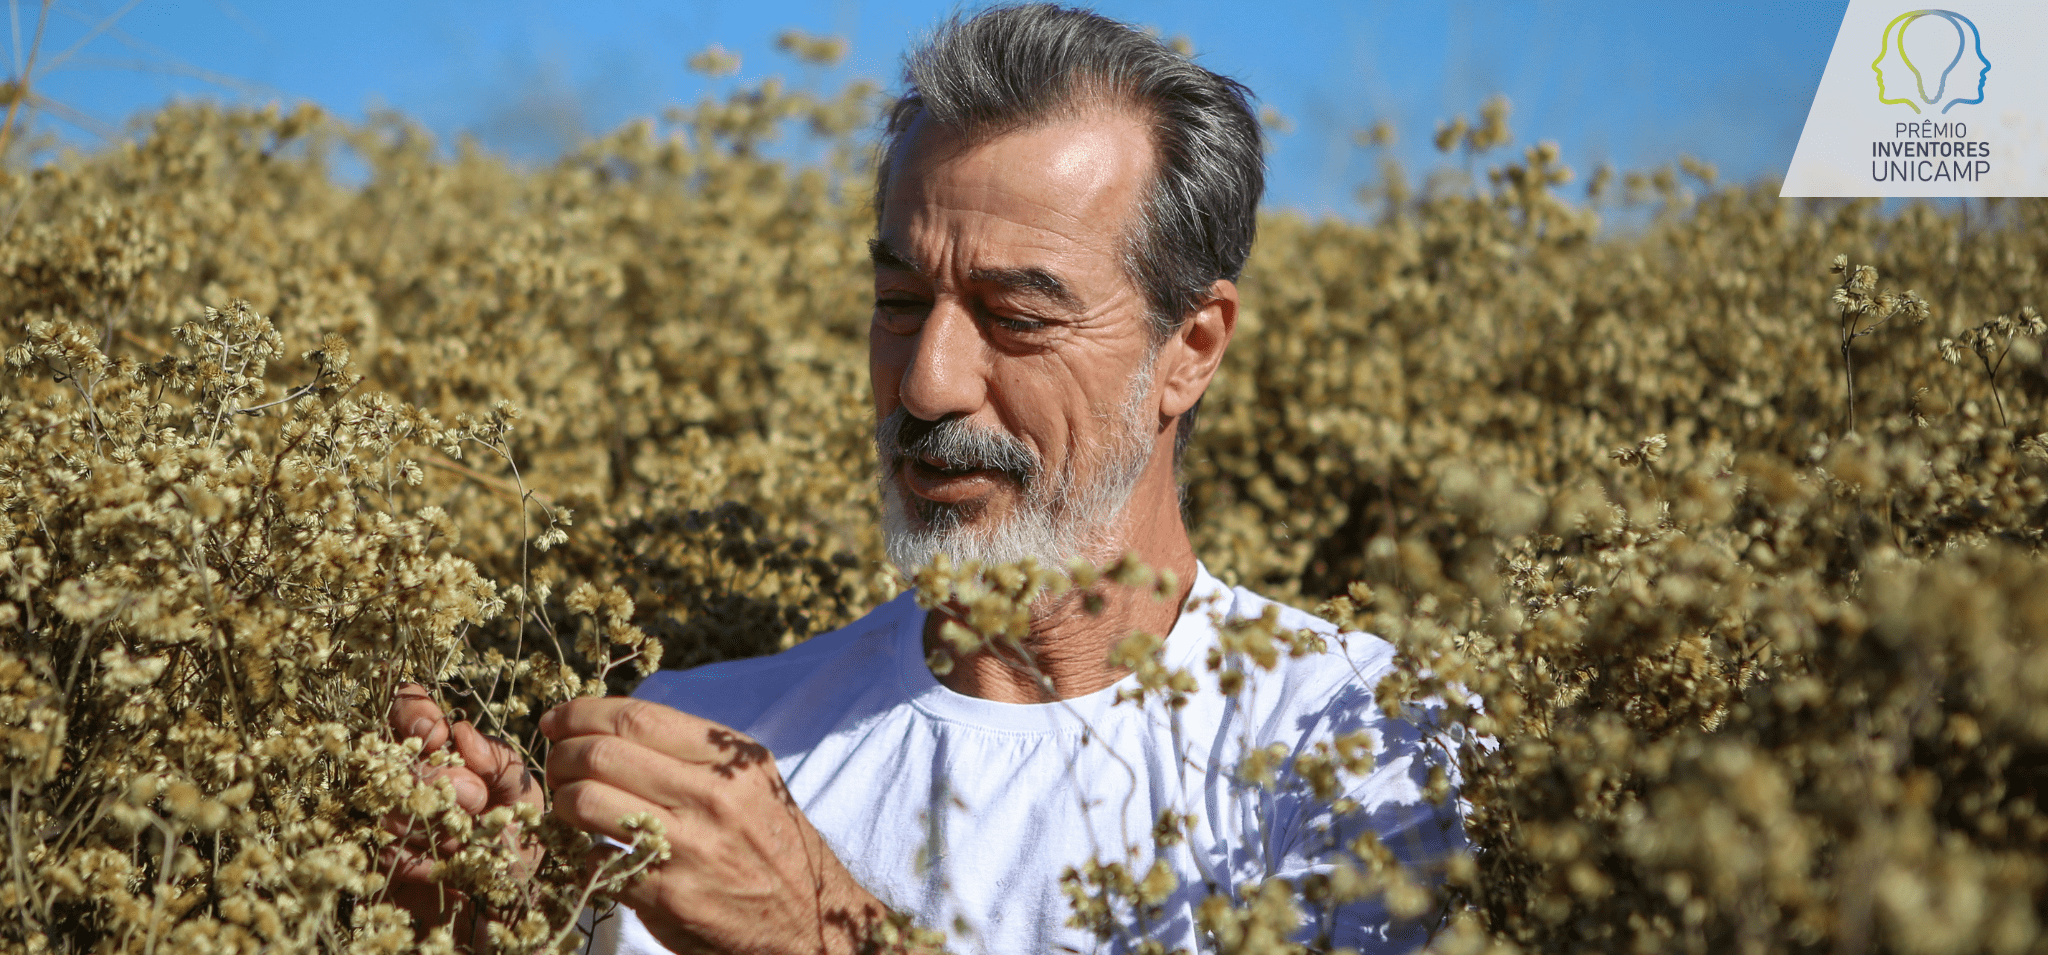 O pesquisador Ilio Montanari Junior, um homem branco de meia idade, com barba e cabelos grisalhos está em meio a um campo de flores amarelas e miúdas. Fim da descrição.